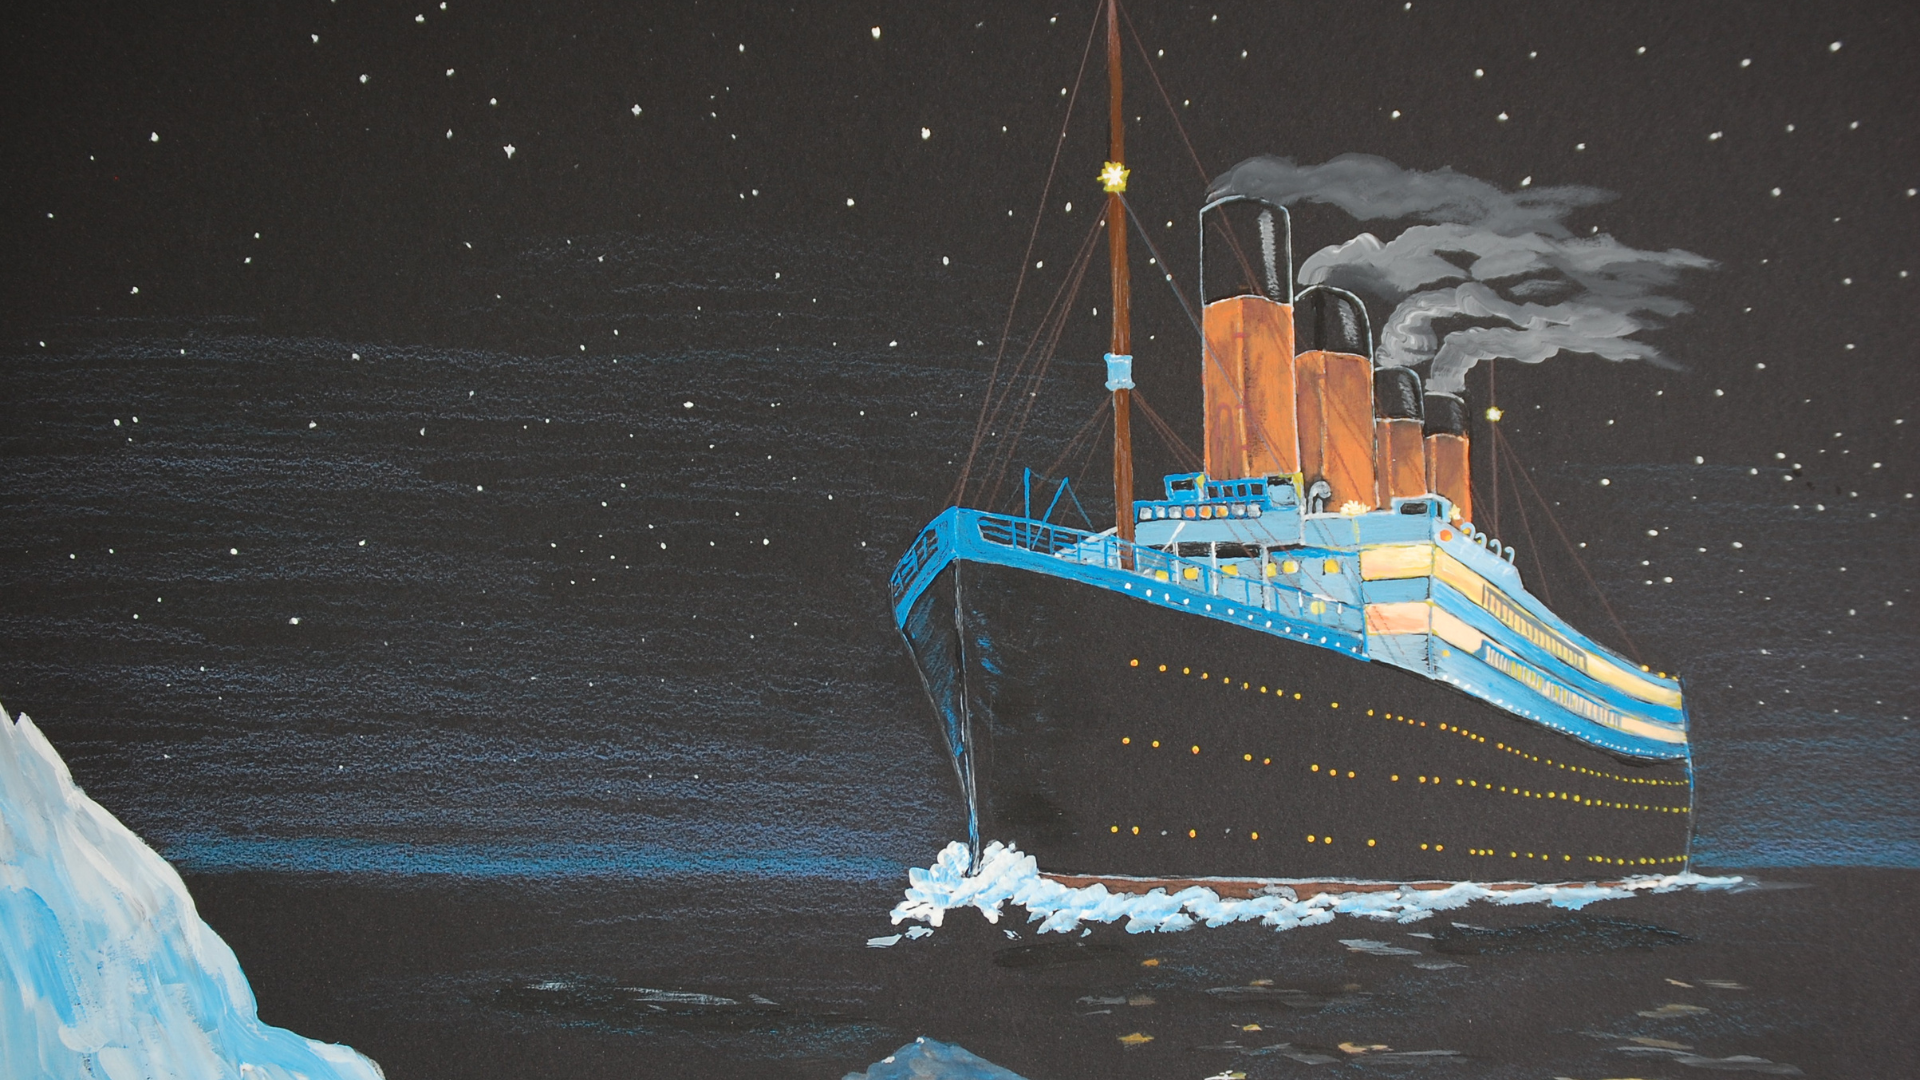 Curiosidades sobre o filme Titanic